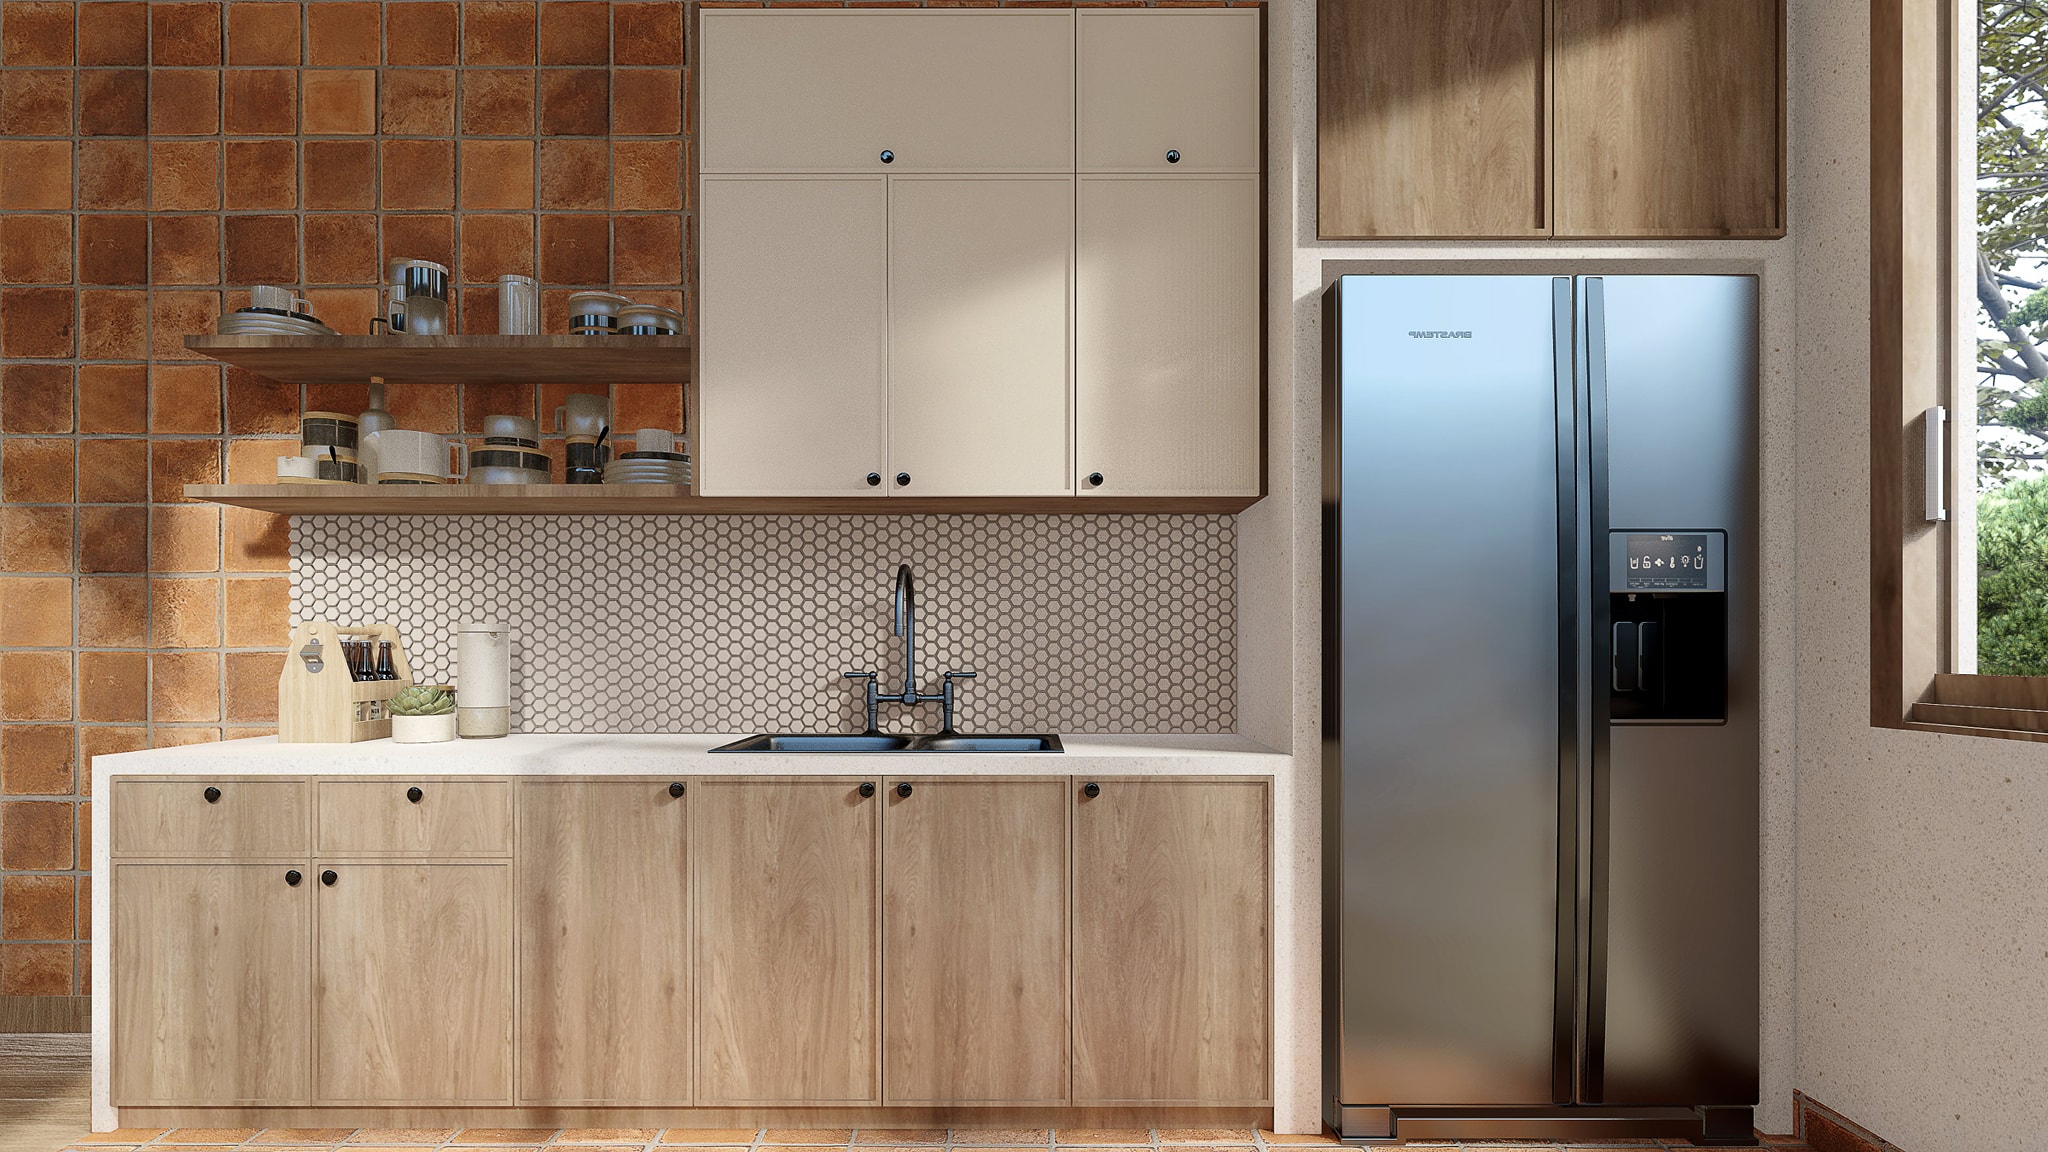 Không gian bếp được thiết kế đơn giản nhỏ gọn